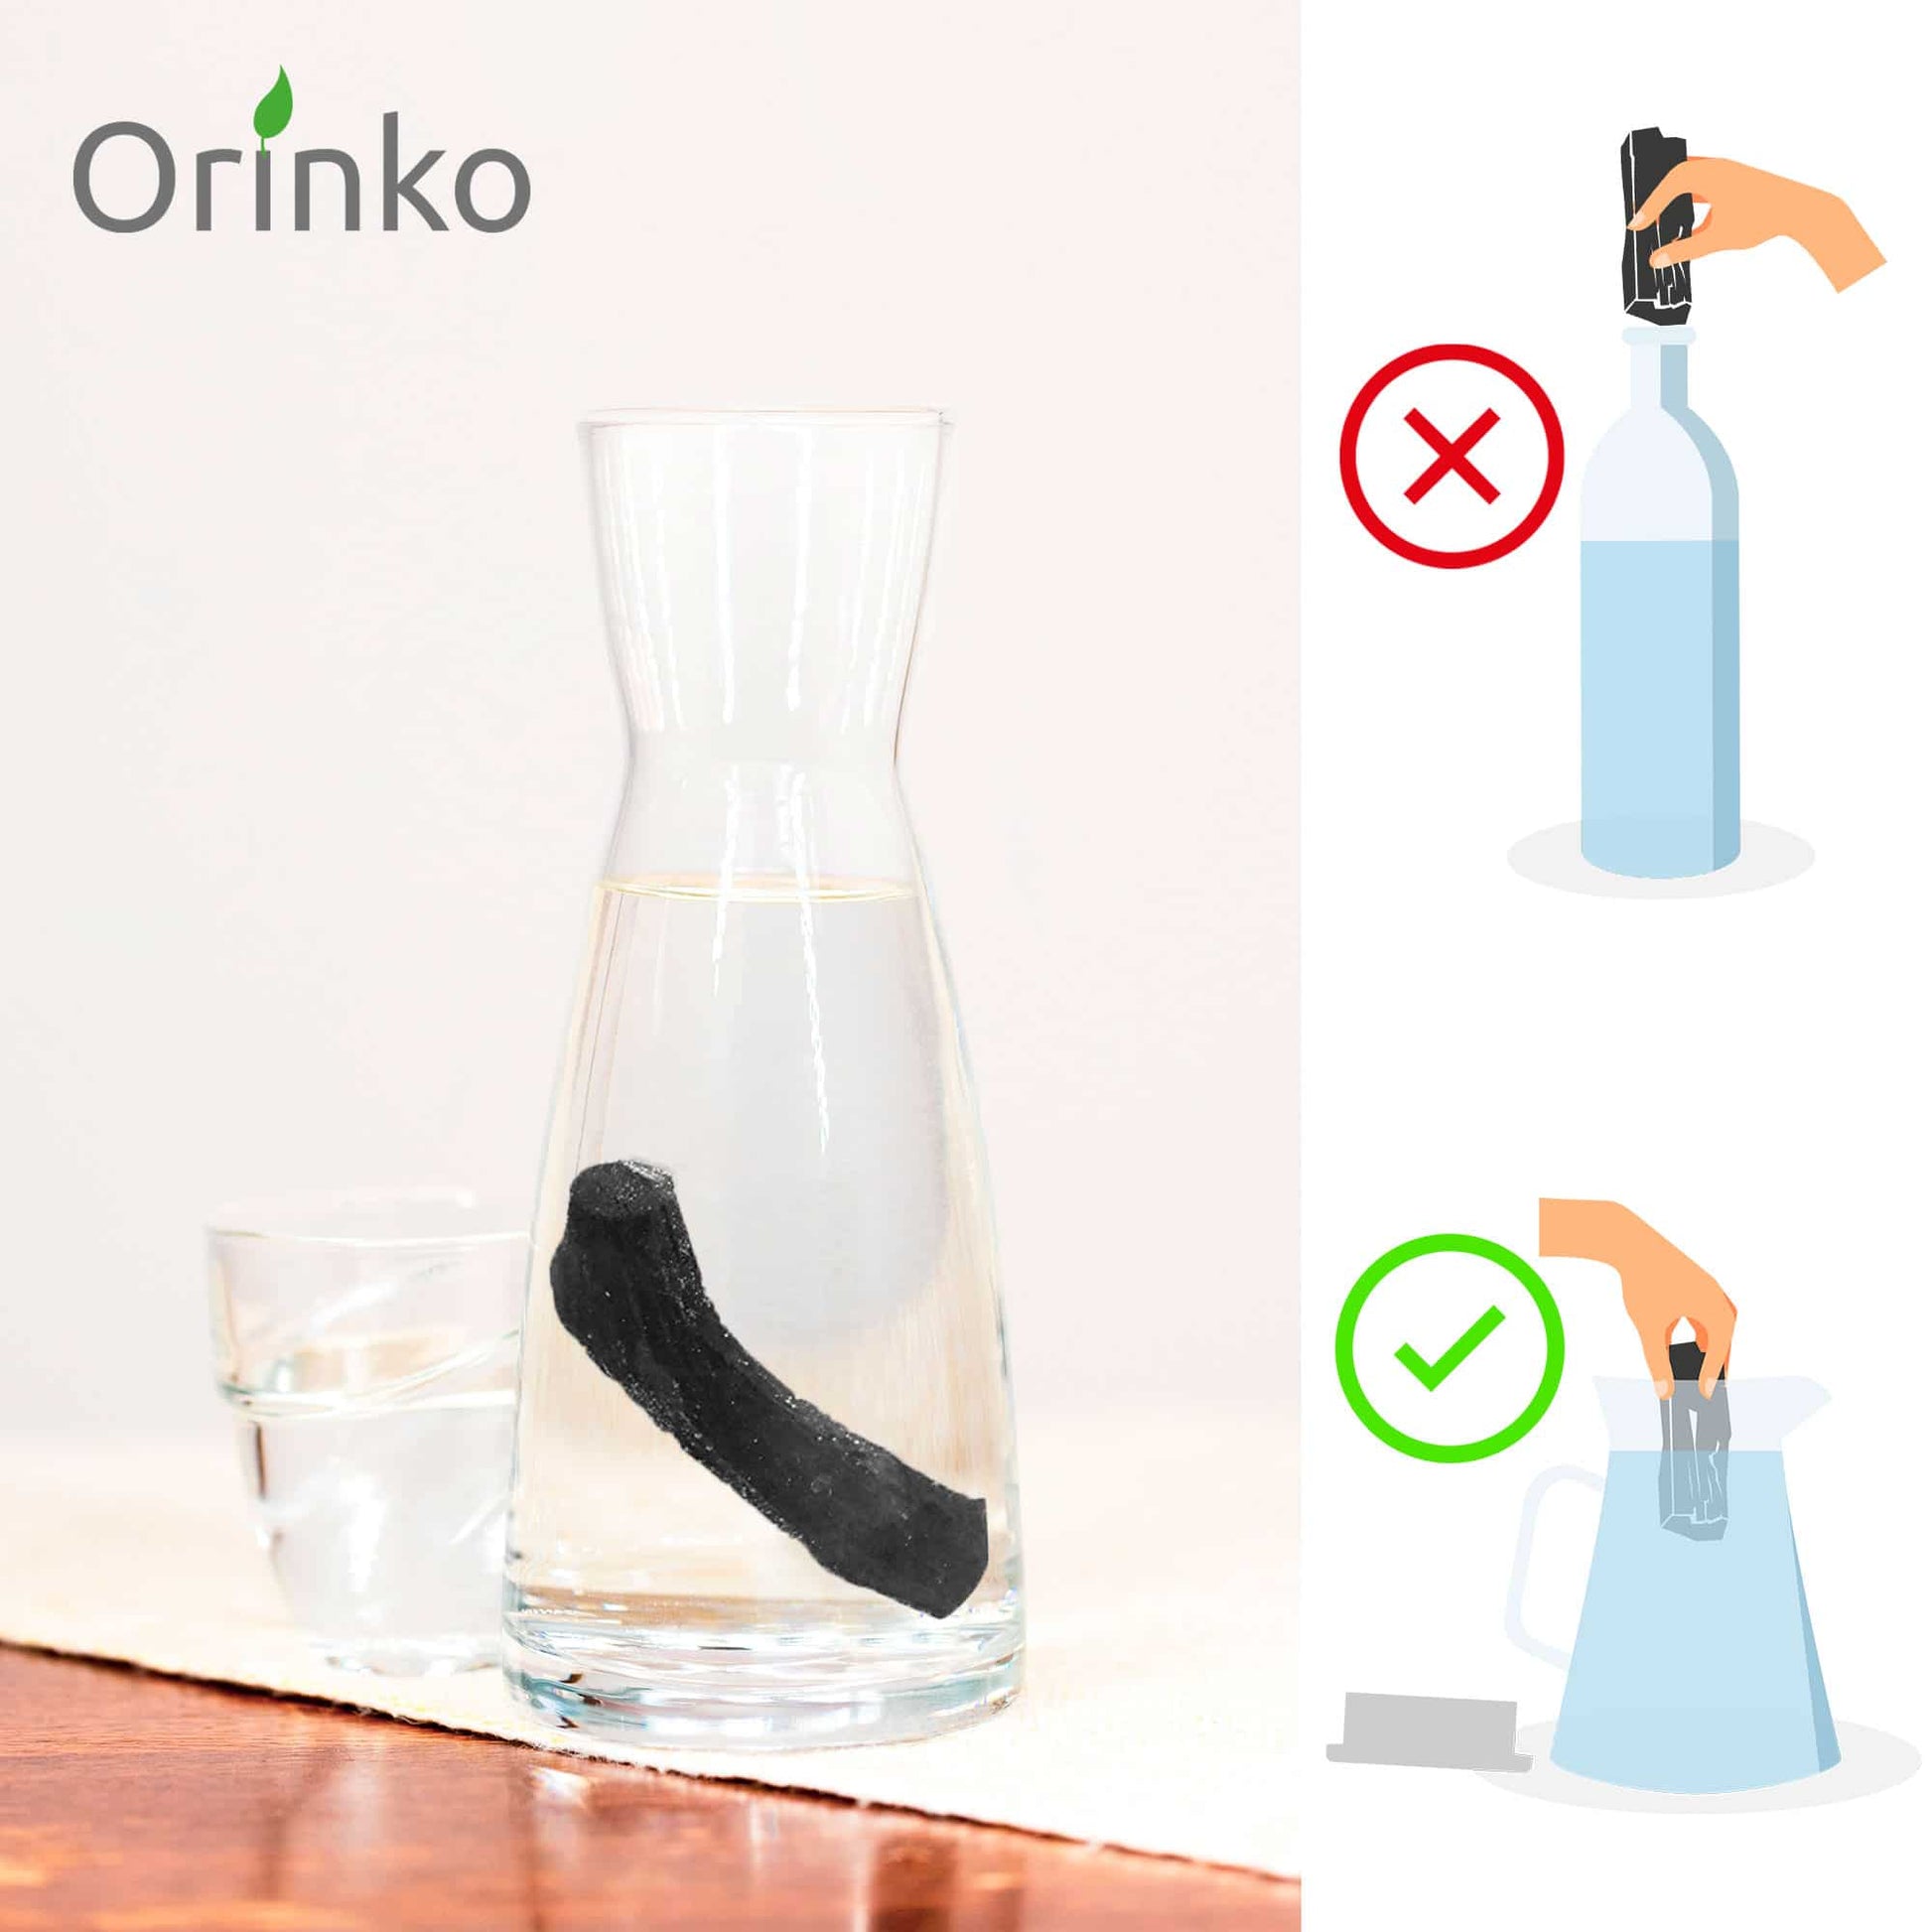 Charbon purificateur d'eau - ORINKO - PBS - Naturopathie & Zéro déchet